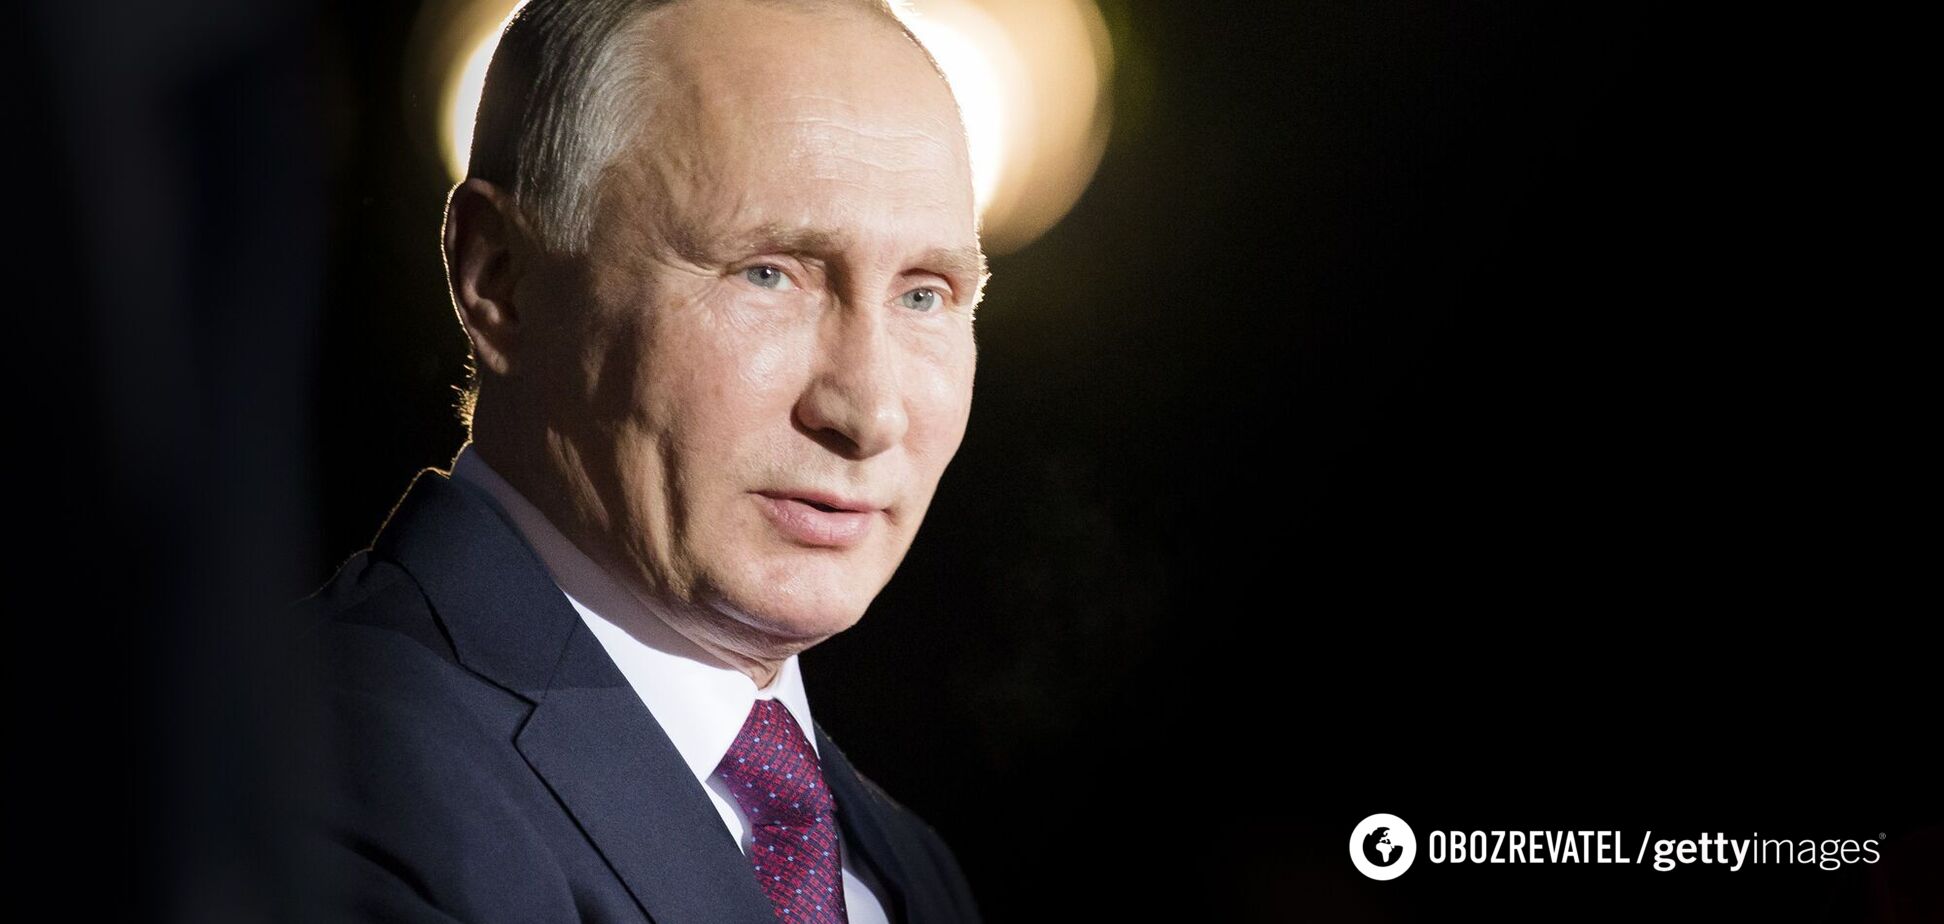 Путин успокоил россиян: через 10 лет Россия будет жить лучше. Видео